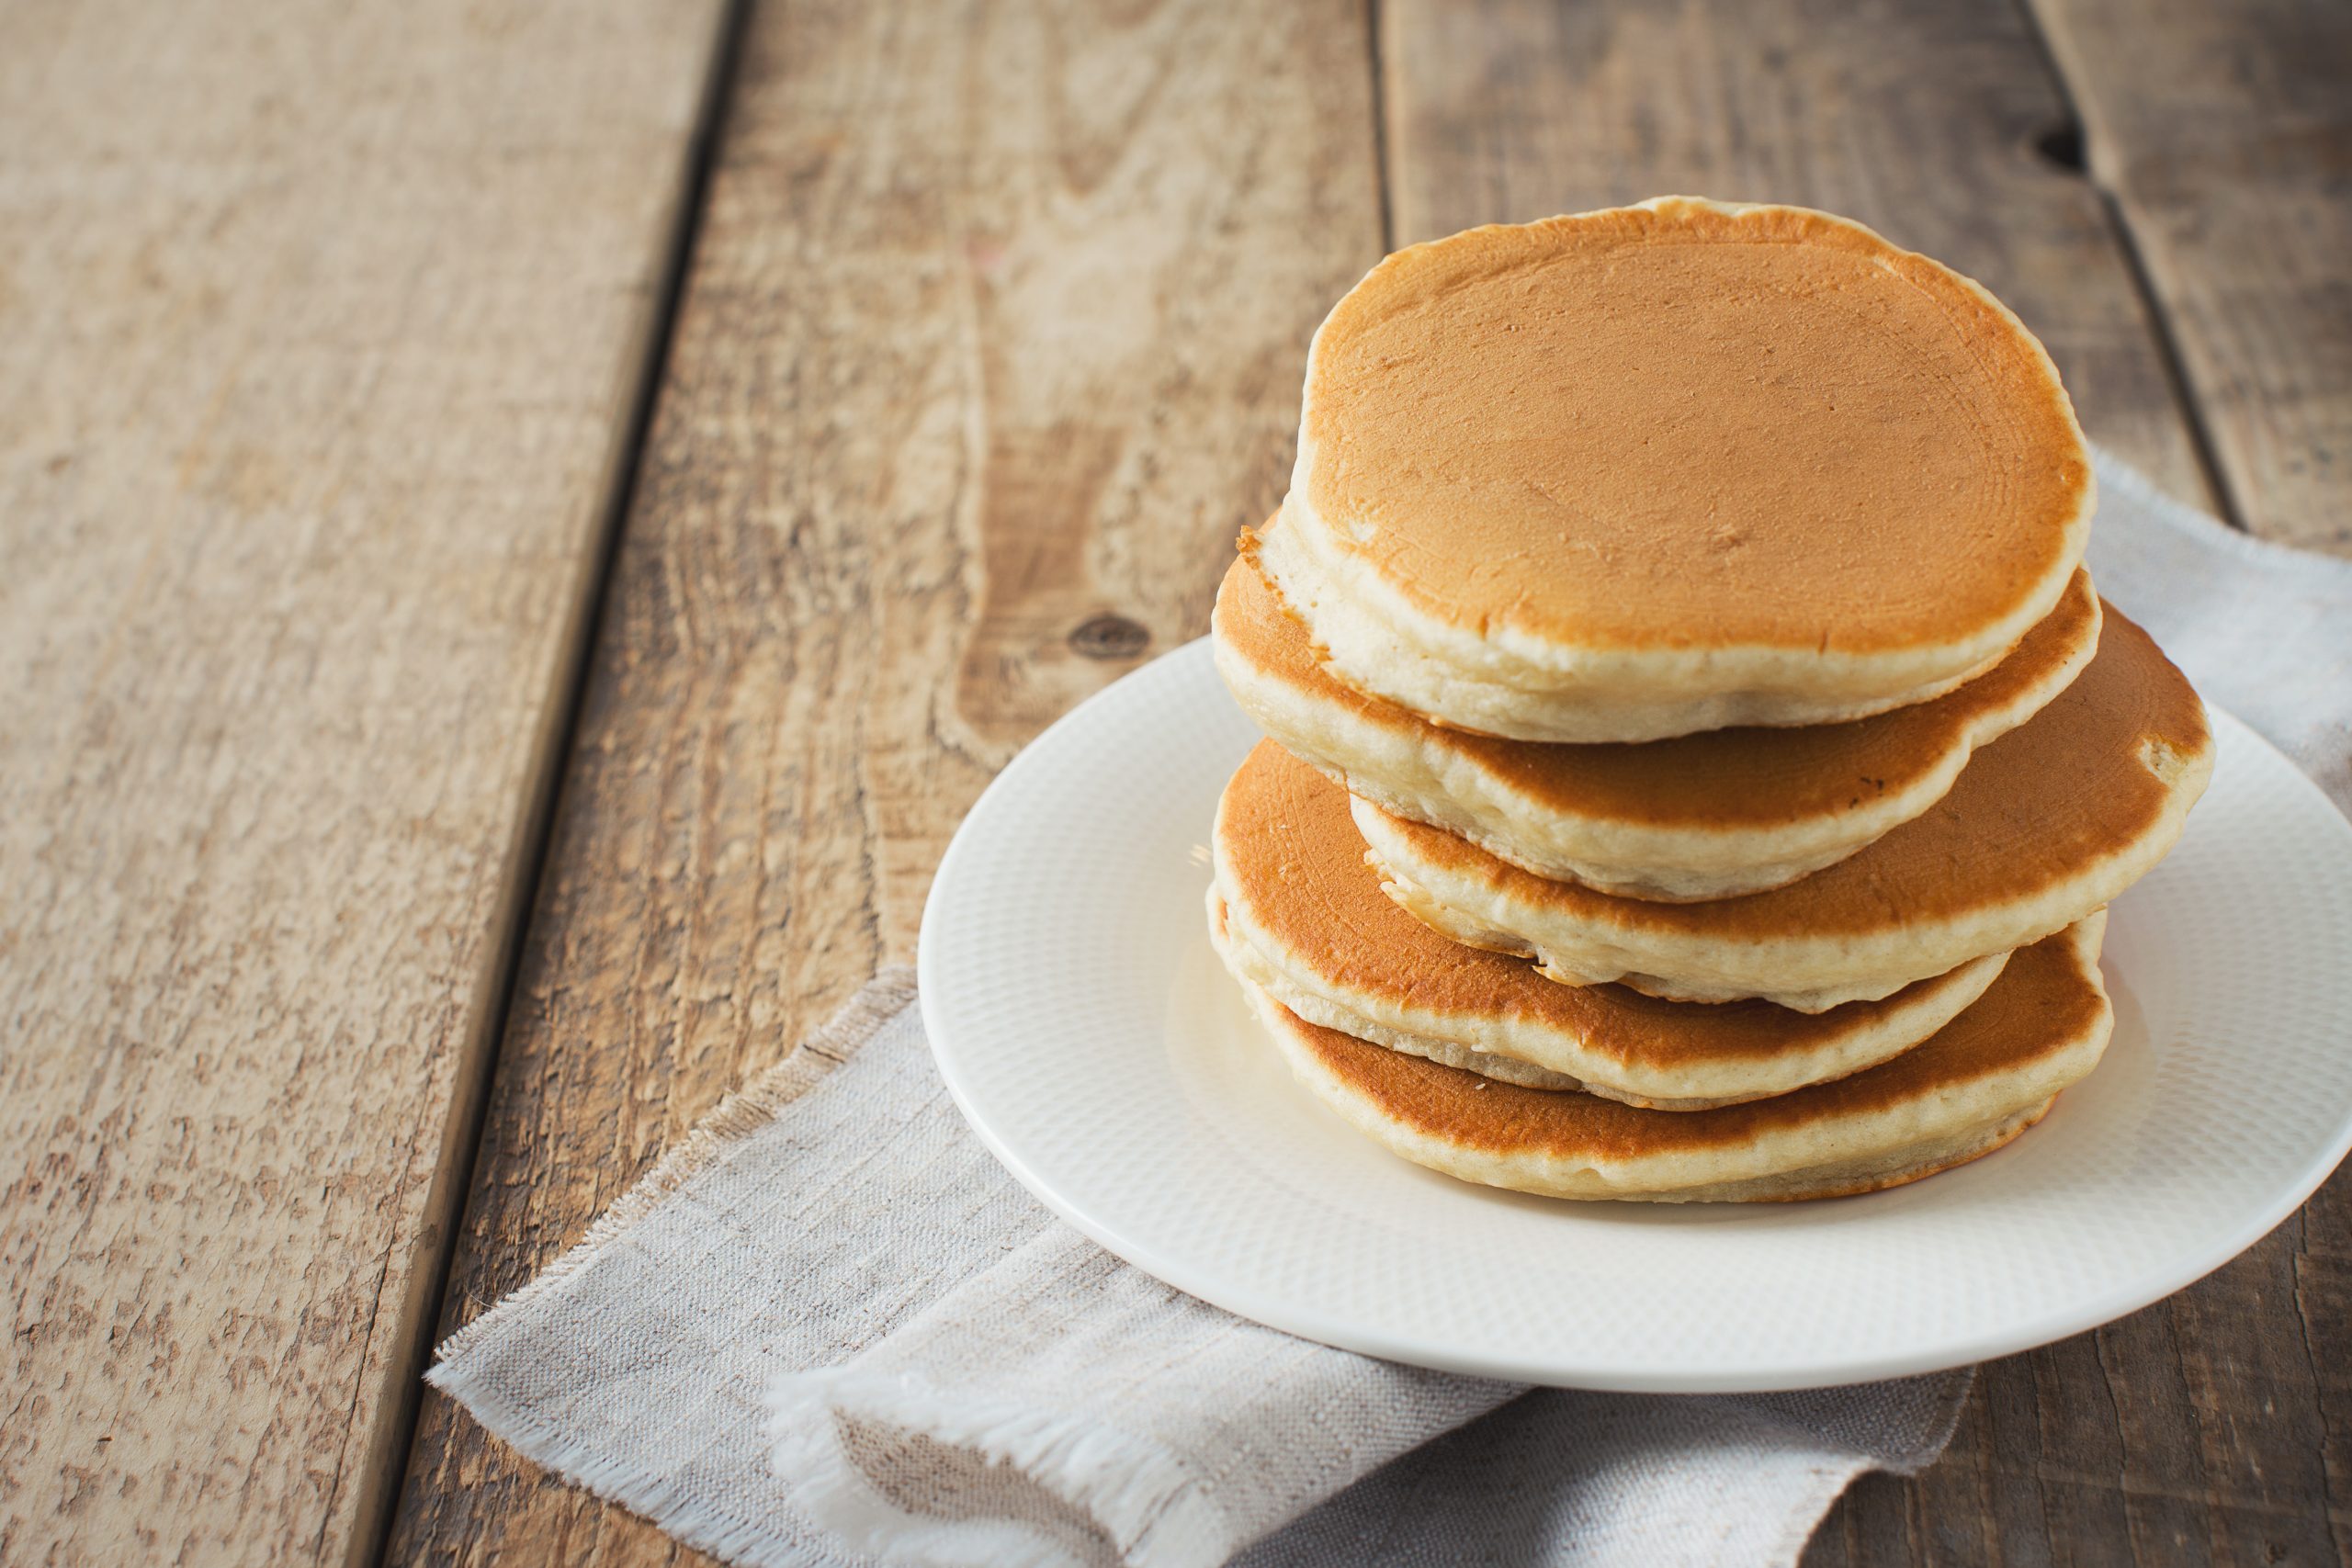 Pancake non uso farina 00, né zucchero, sono buonissimi!